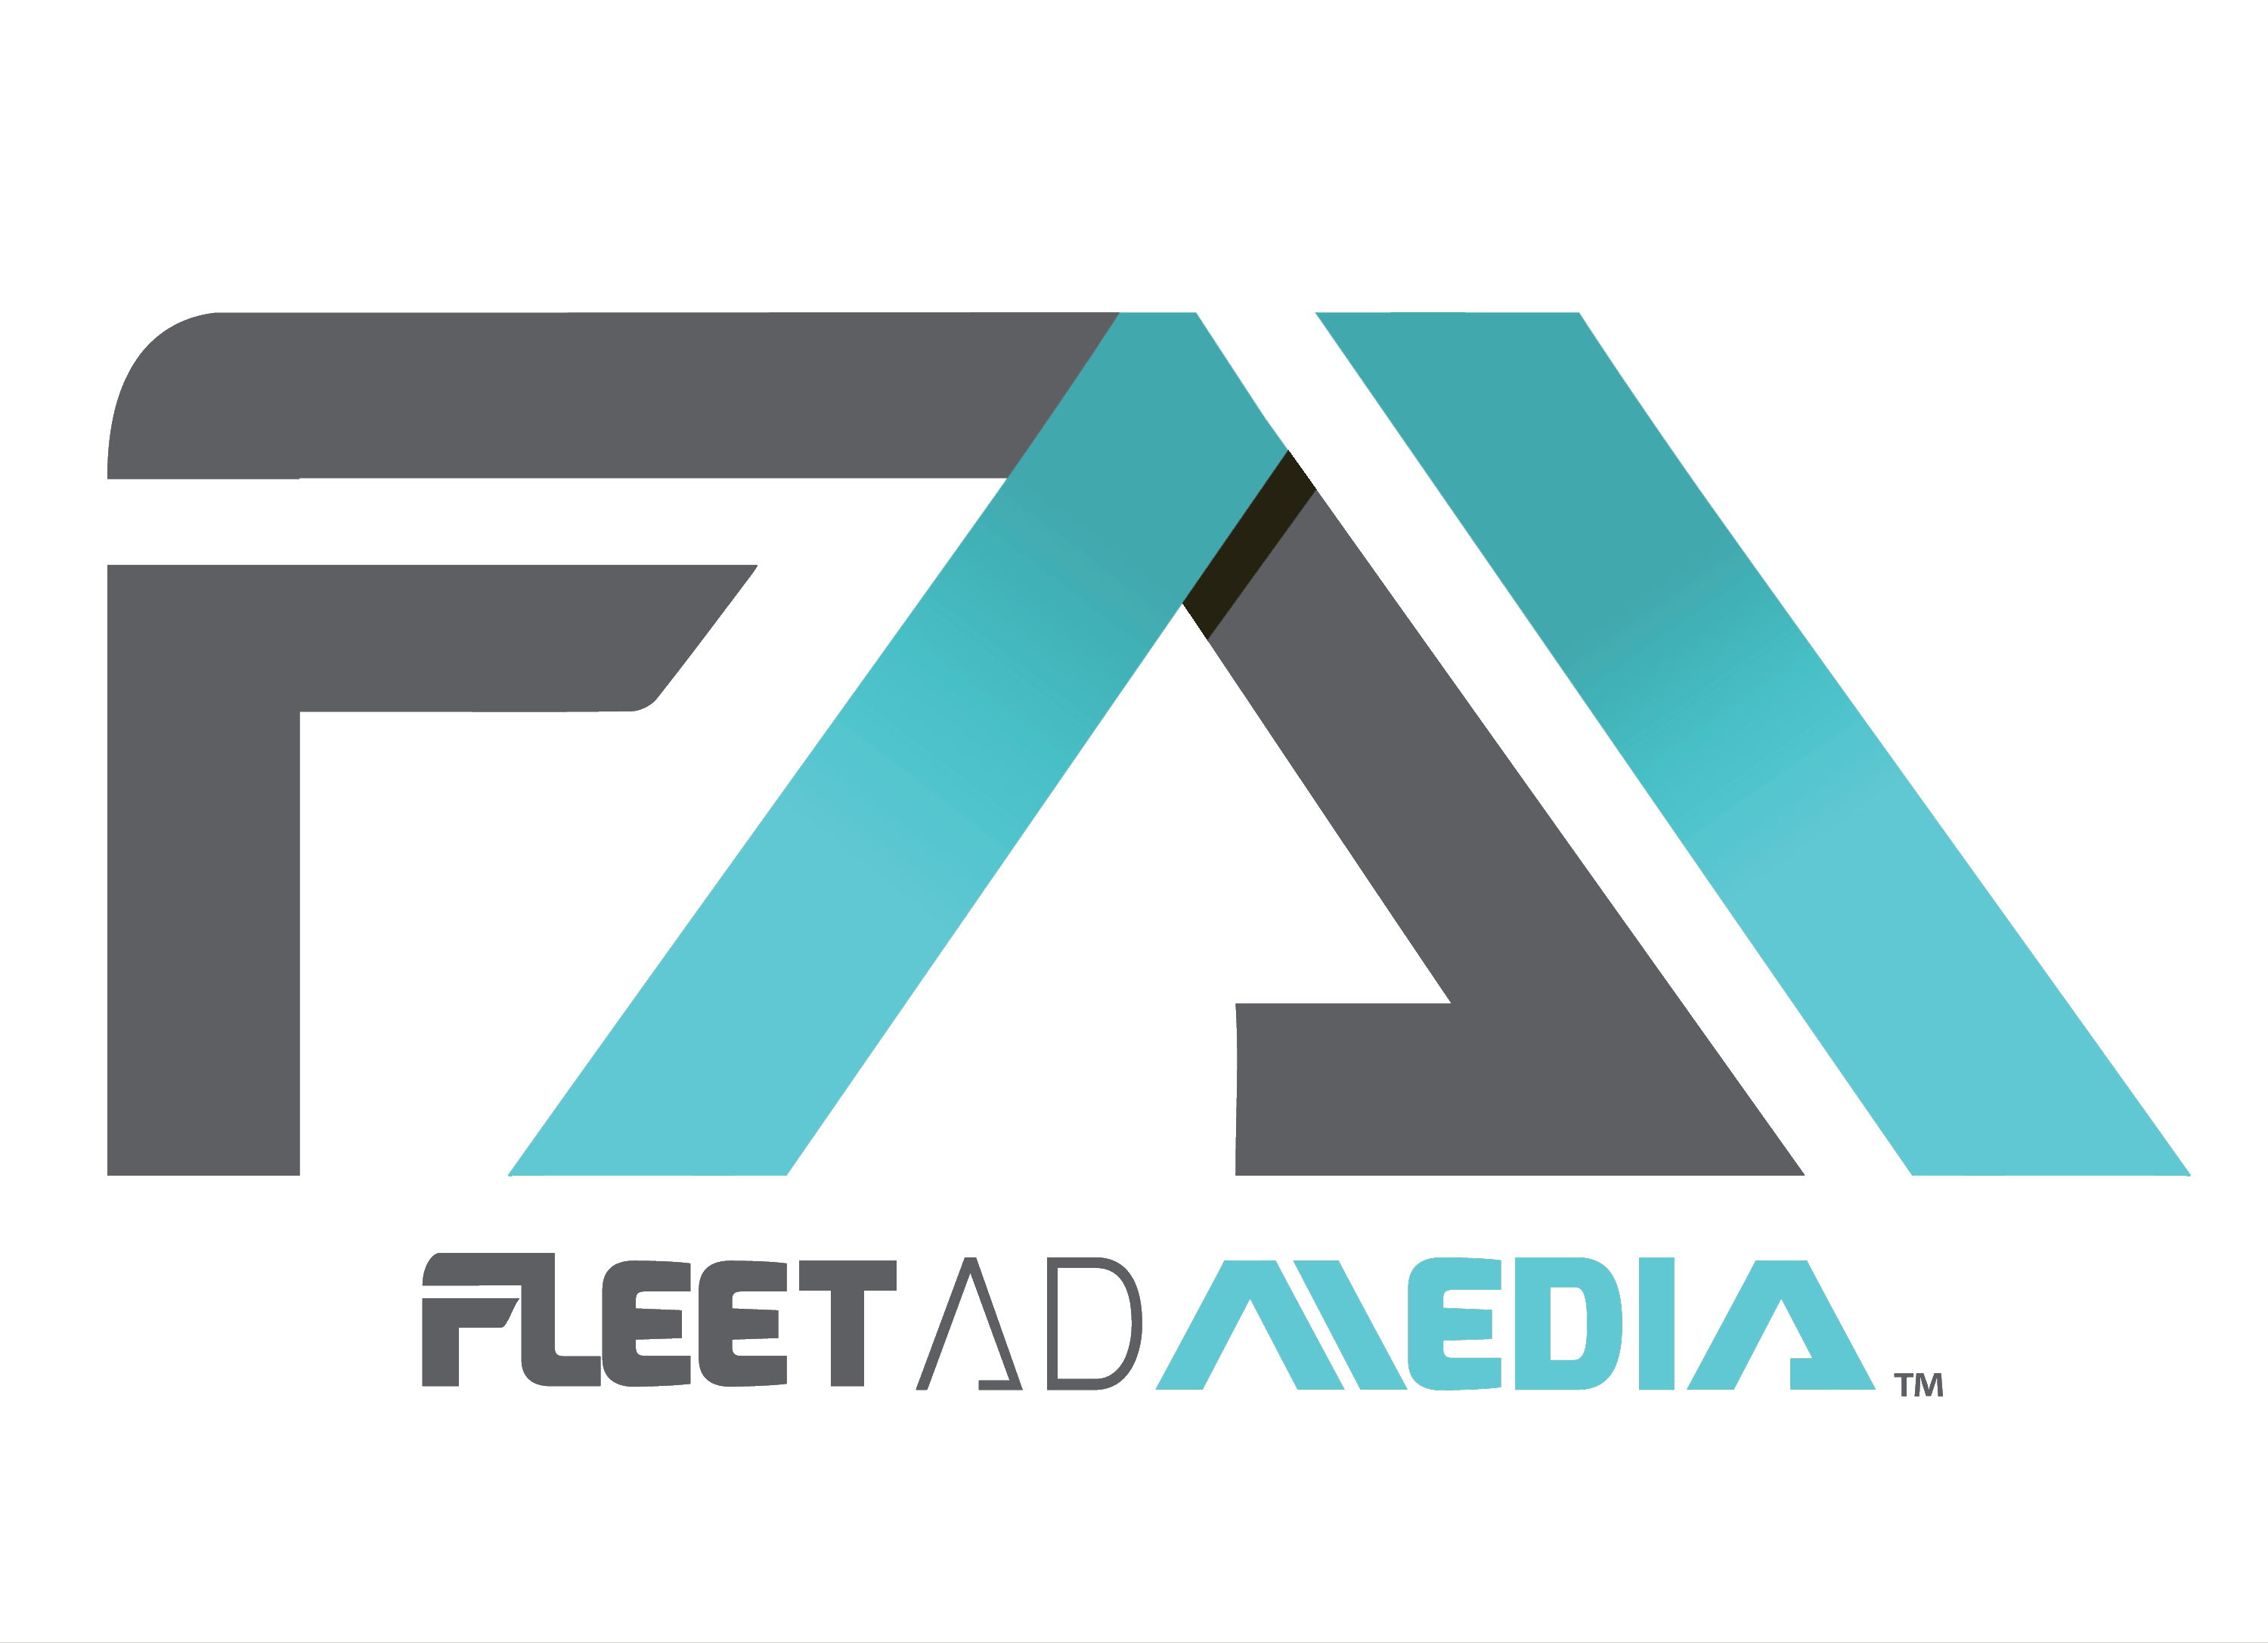 Fleet Ad Media